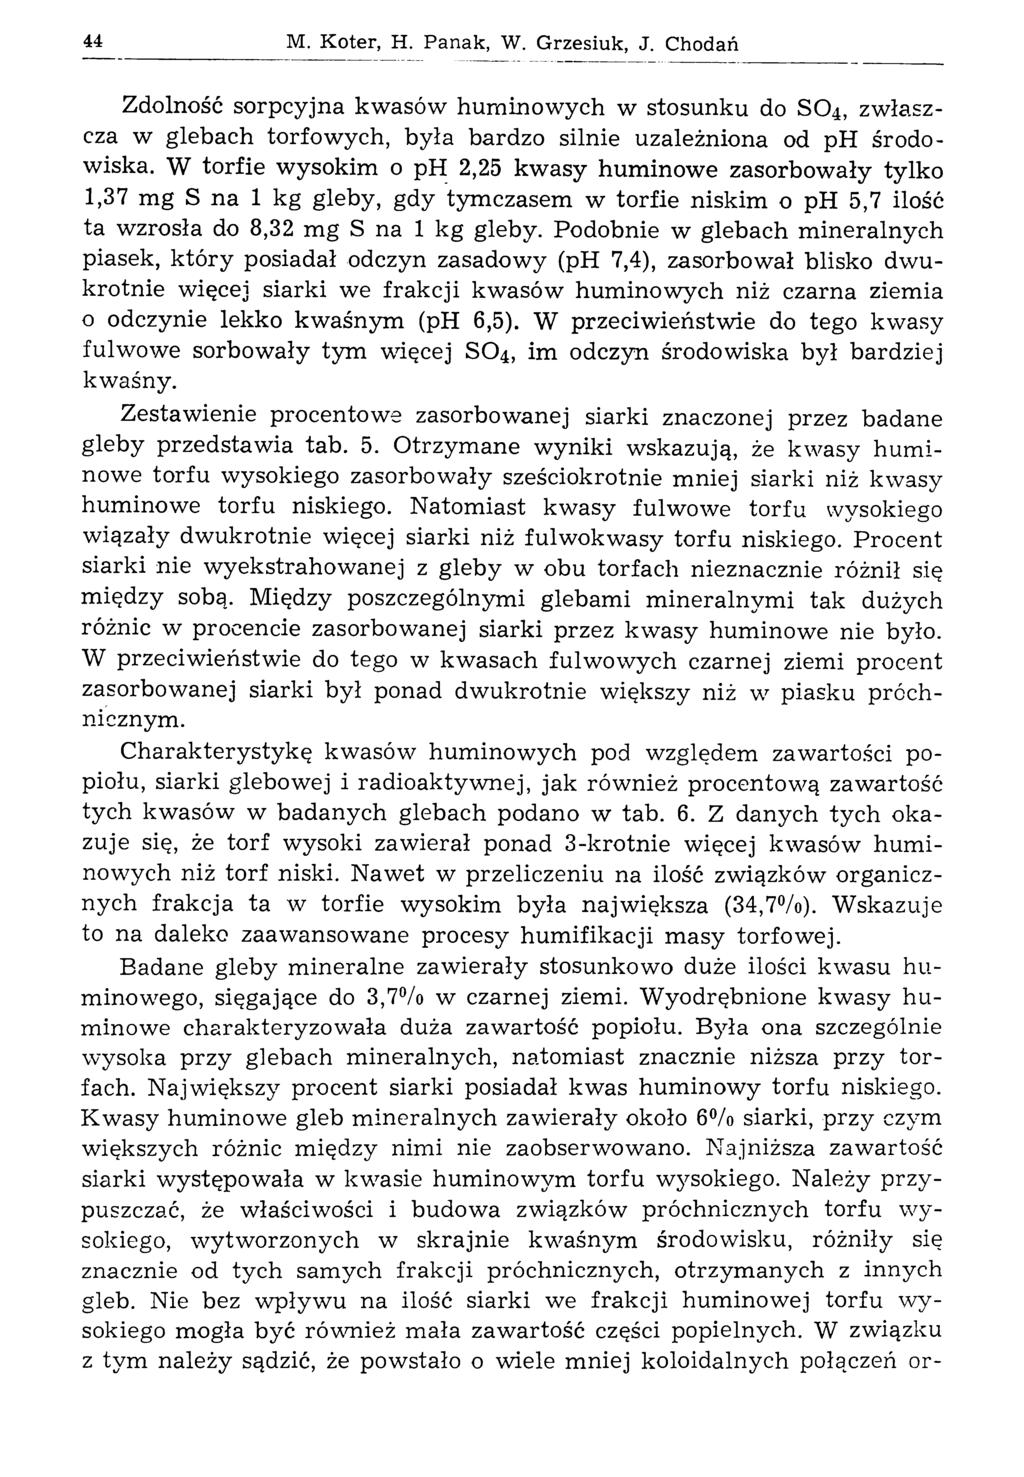 44 M. Koter, H. Panak, W. Grzesiuk, J. Chodań Zdolność sorpcyjna kwasów huminowych w stosunku do SO4, zwłaszcza w glebach torfowych, była bardzo silnie uzależniona od ph środowiska.